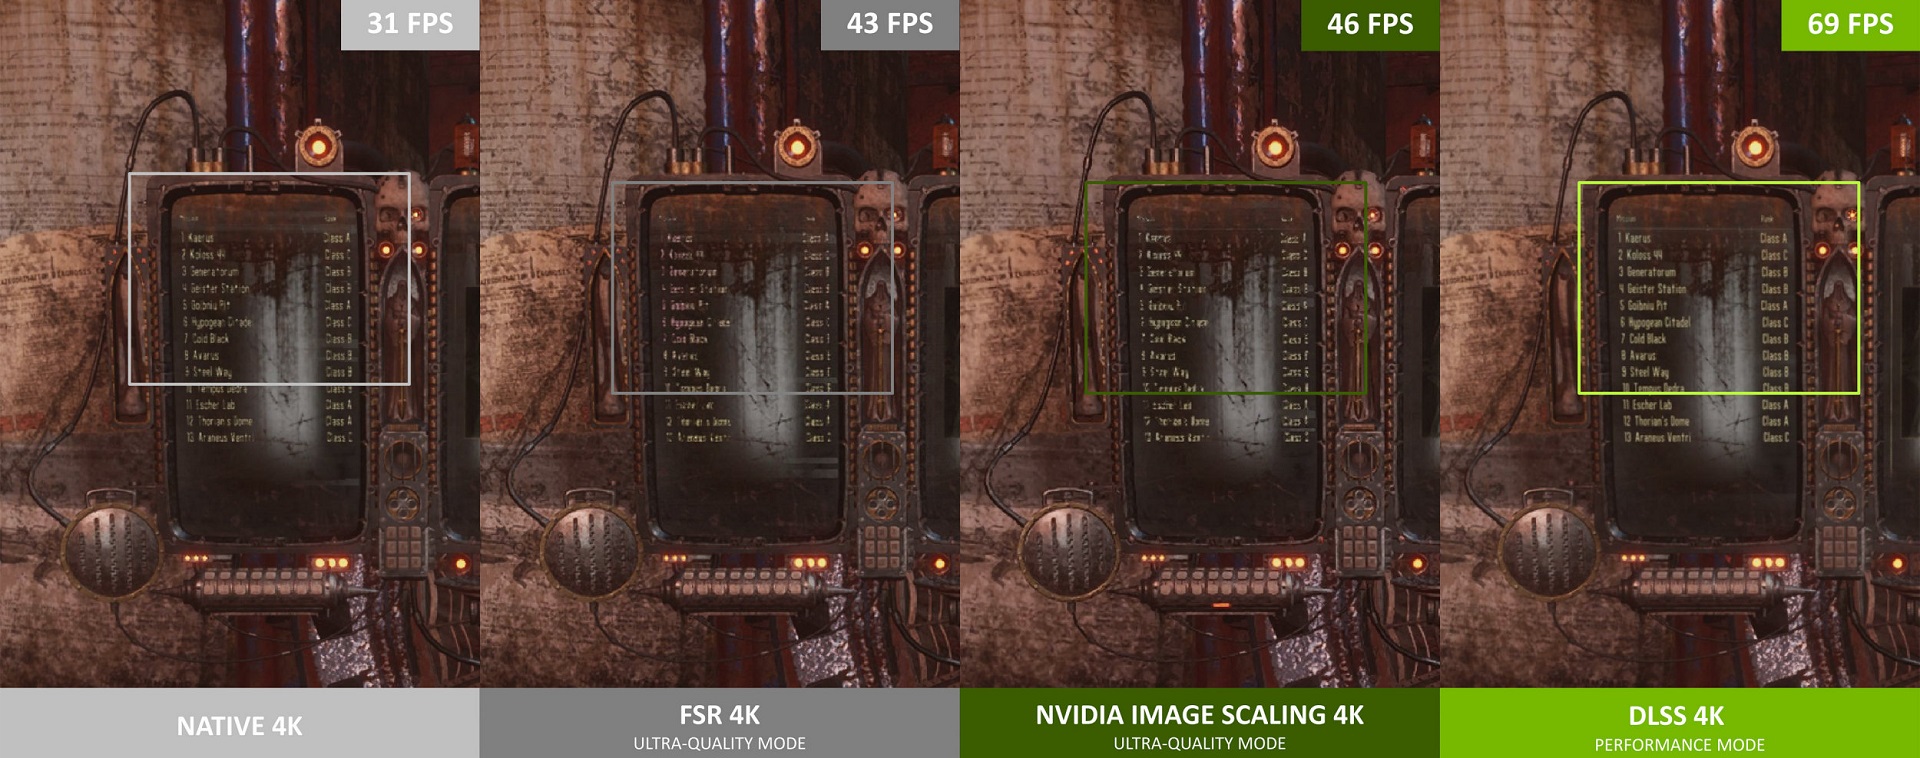 عملکرد فناوری NVIDIA Image Scaling در بازی